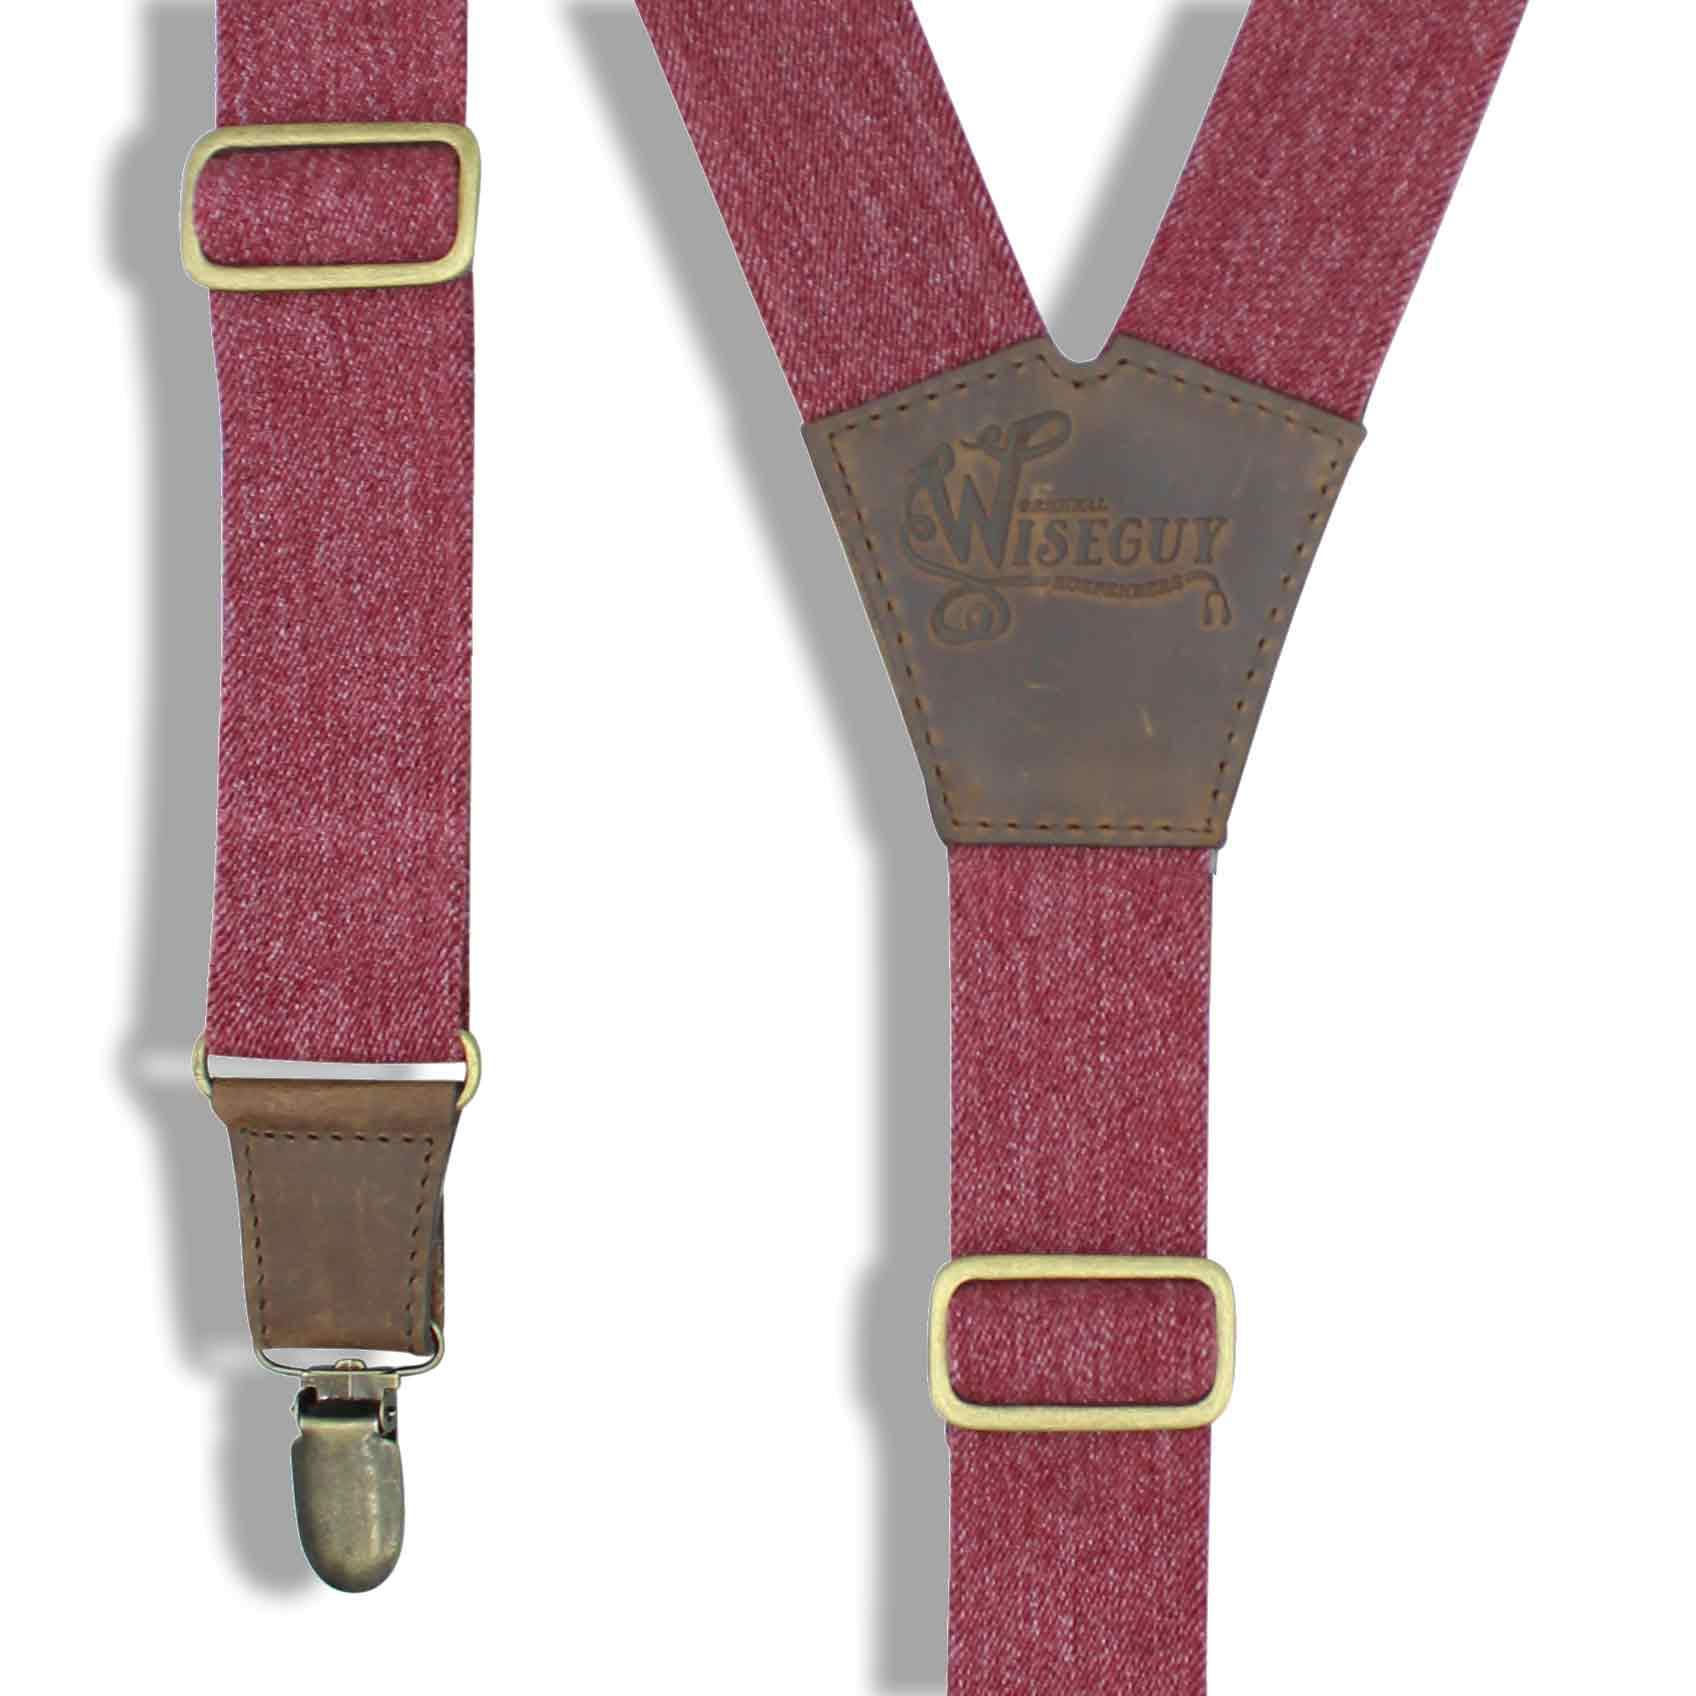 Burgundy Elastic Jeans look Suspenders with dark brown leather parts - Wiseguy Suspenders